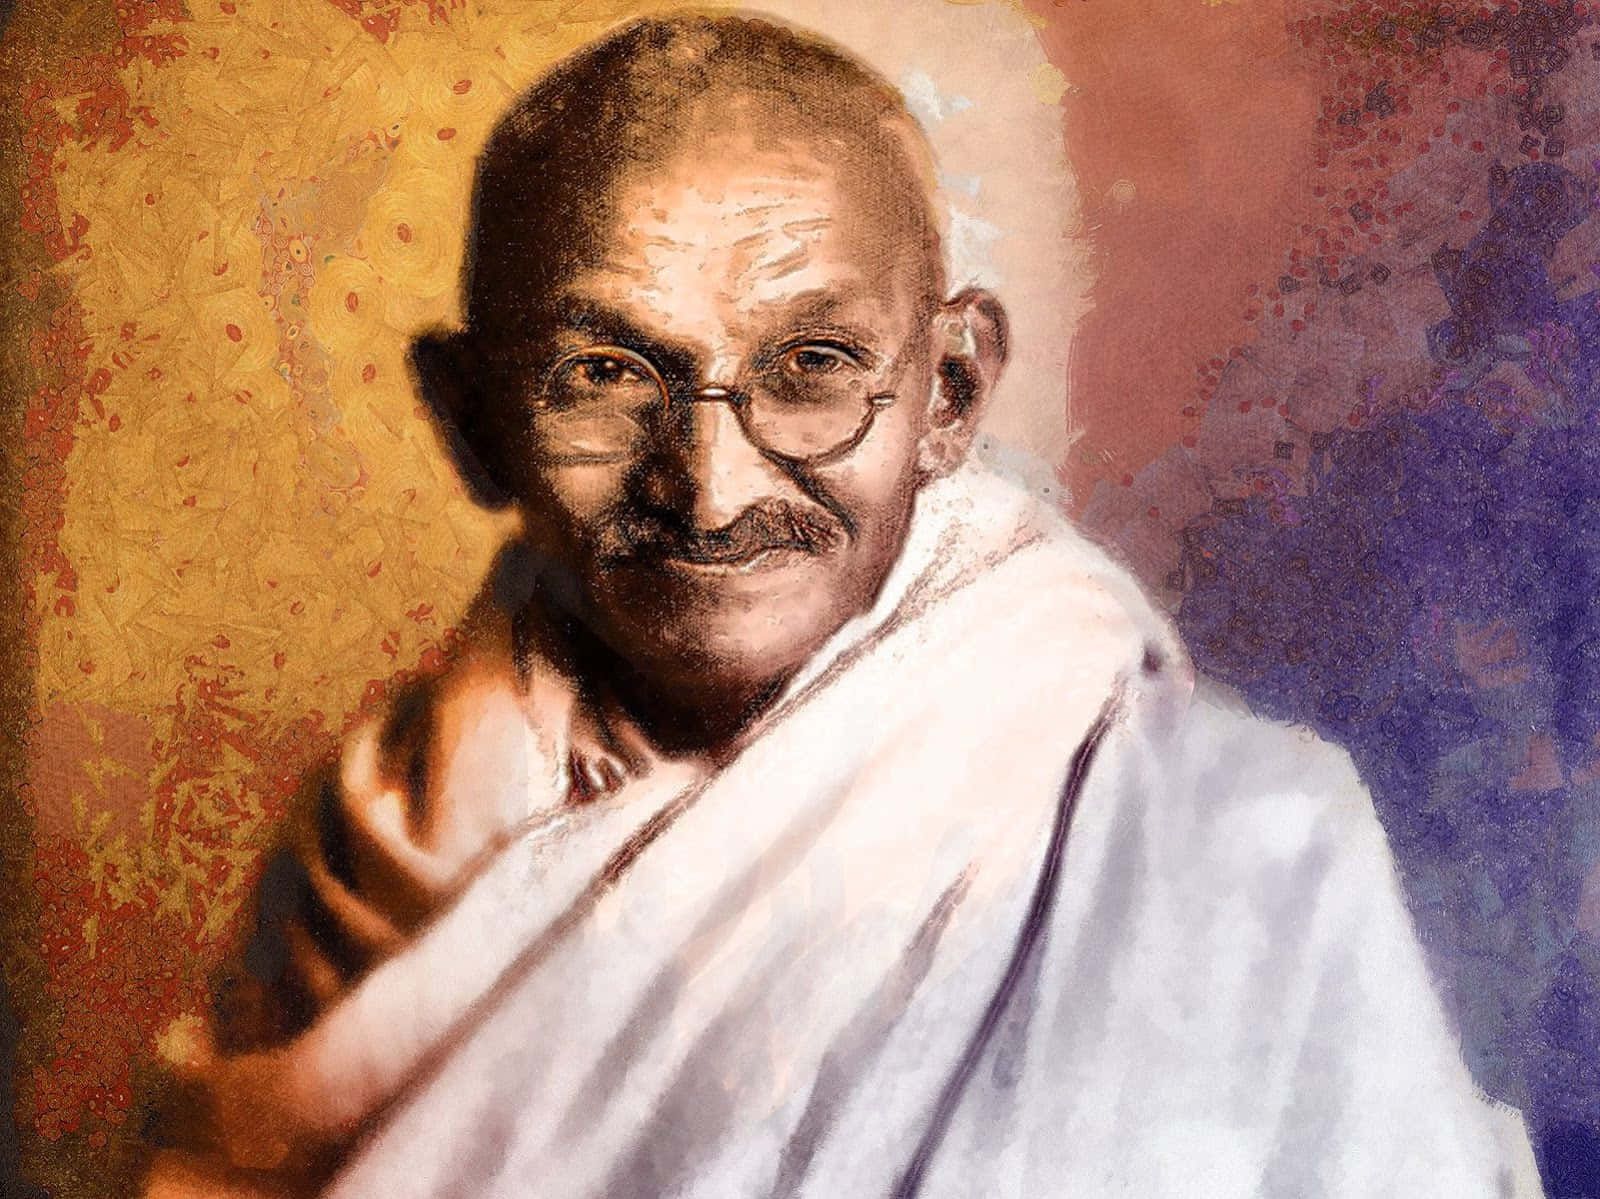 Gandhigemälde - Gandhi-kunstdruck